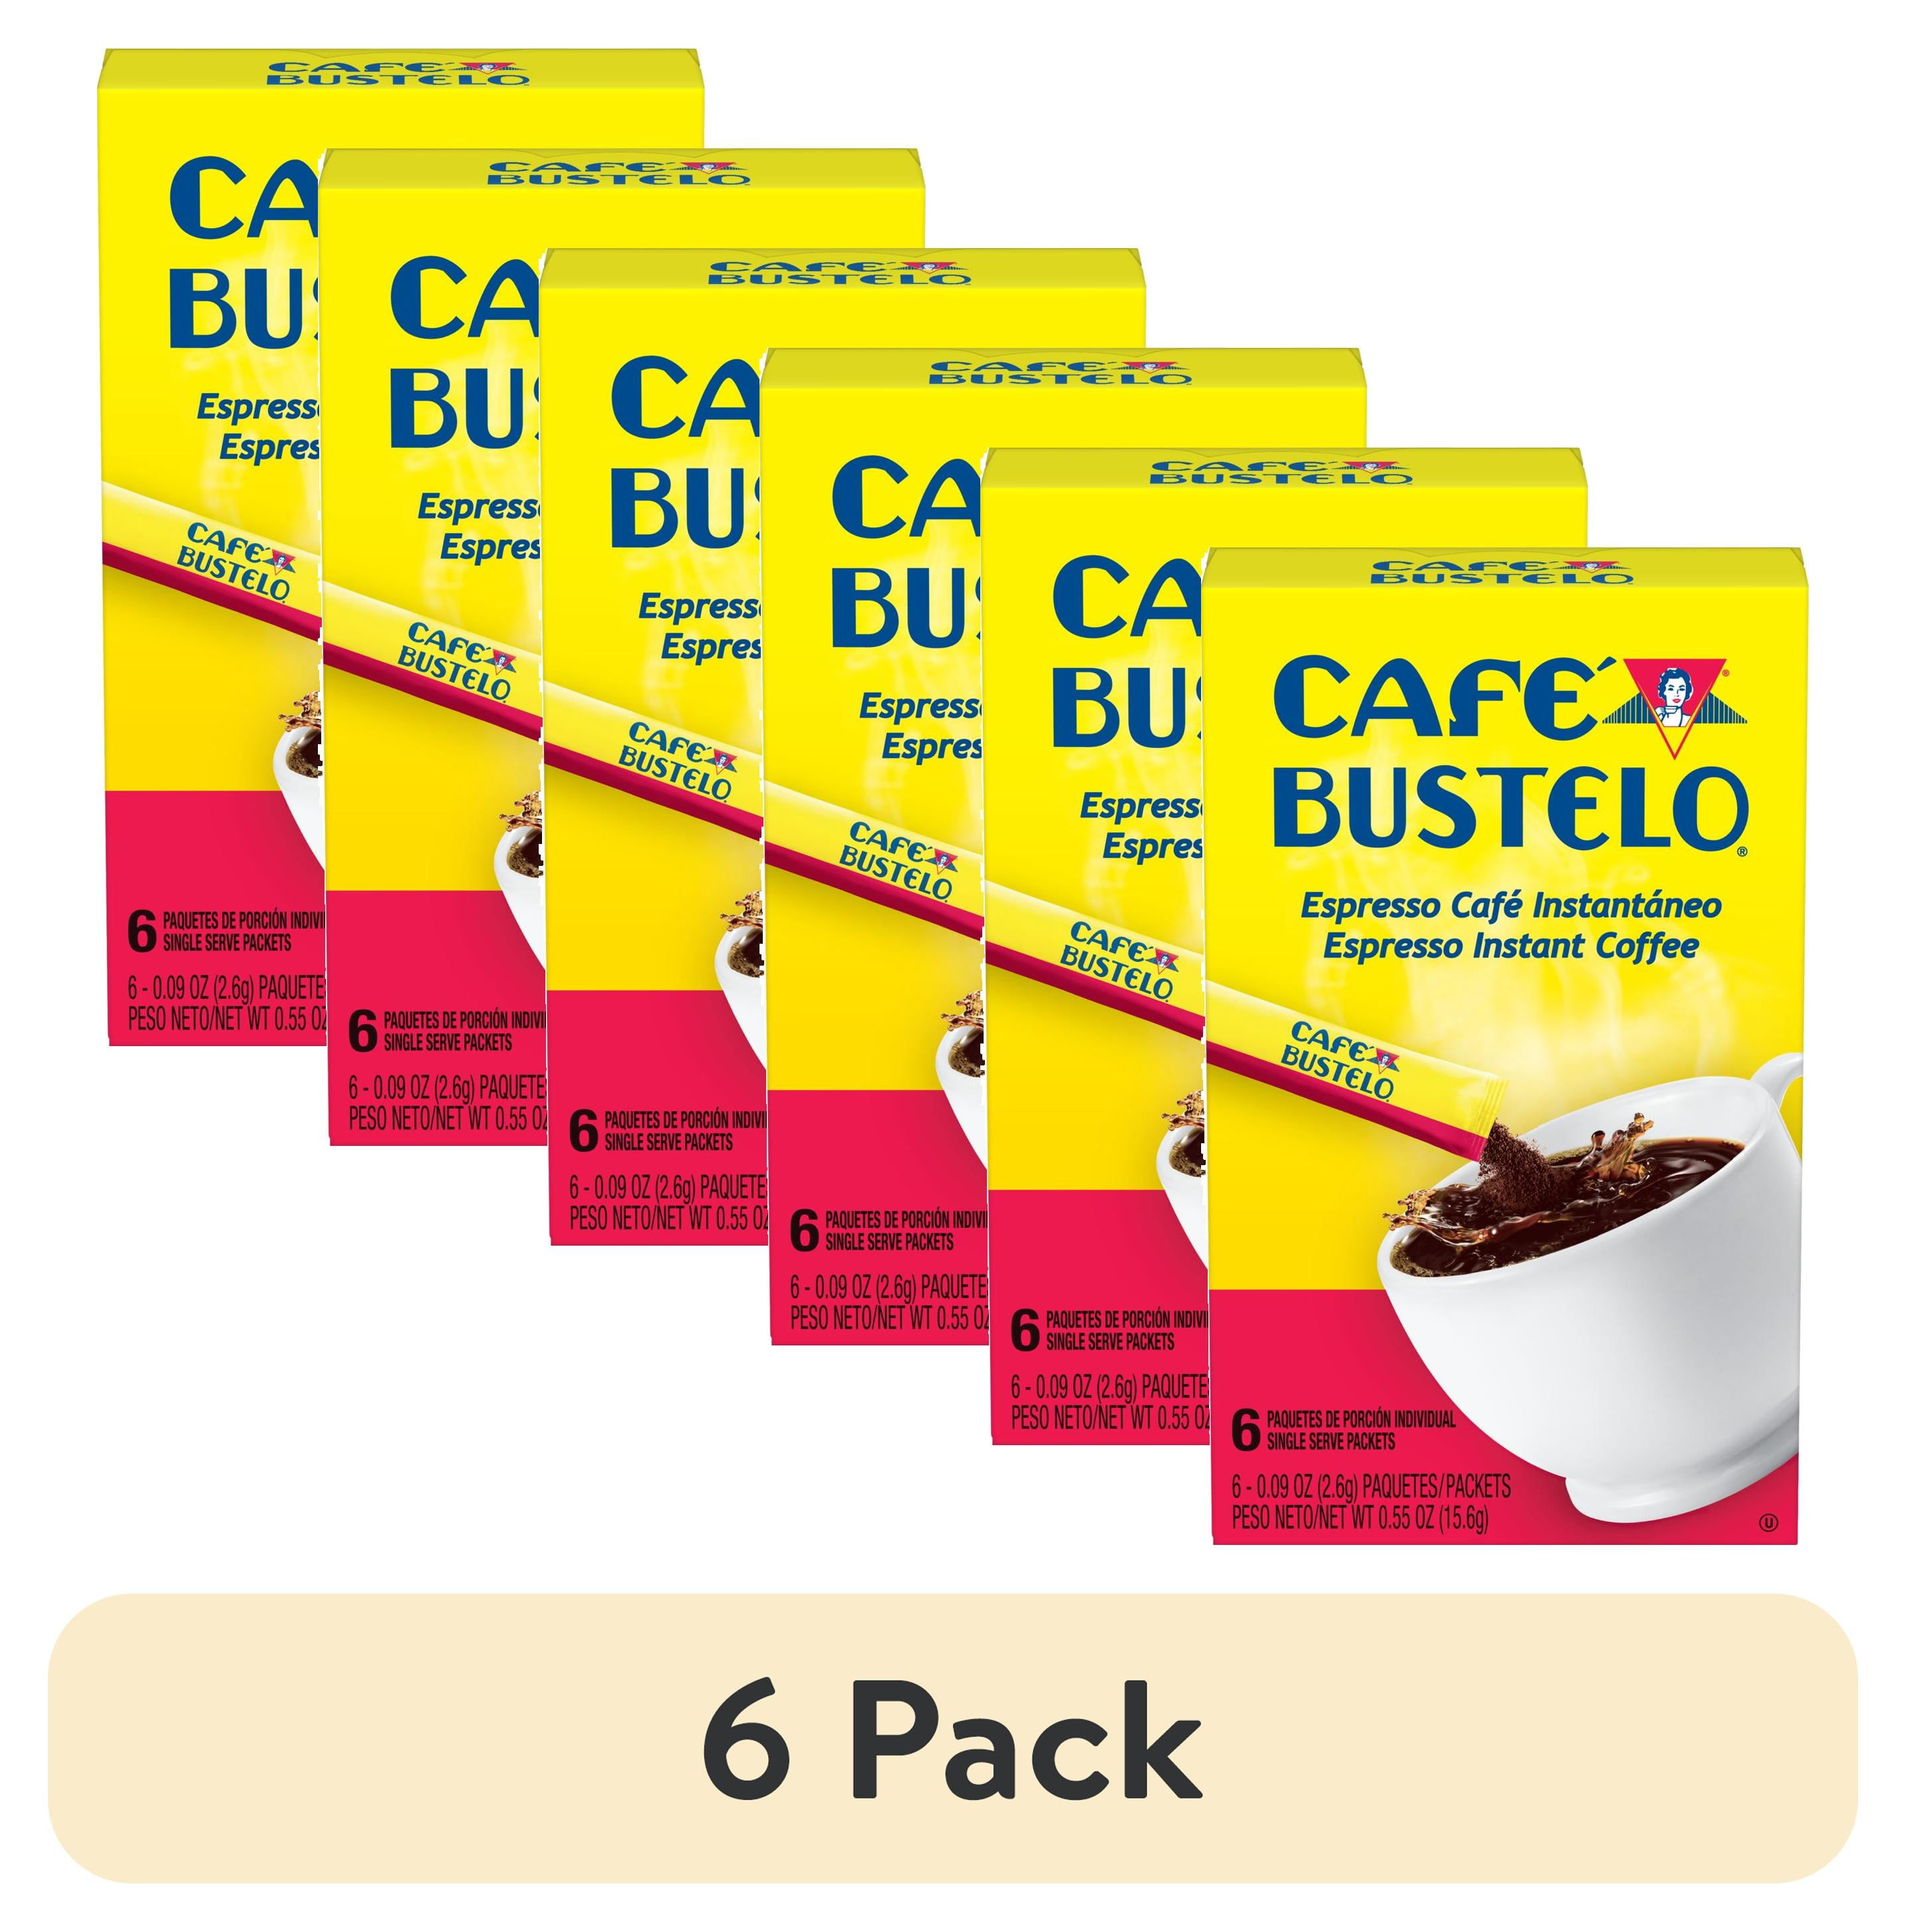 Café Pilon Instant Coffee Single Serve Packets, 6 Count